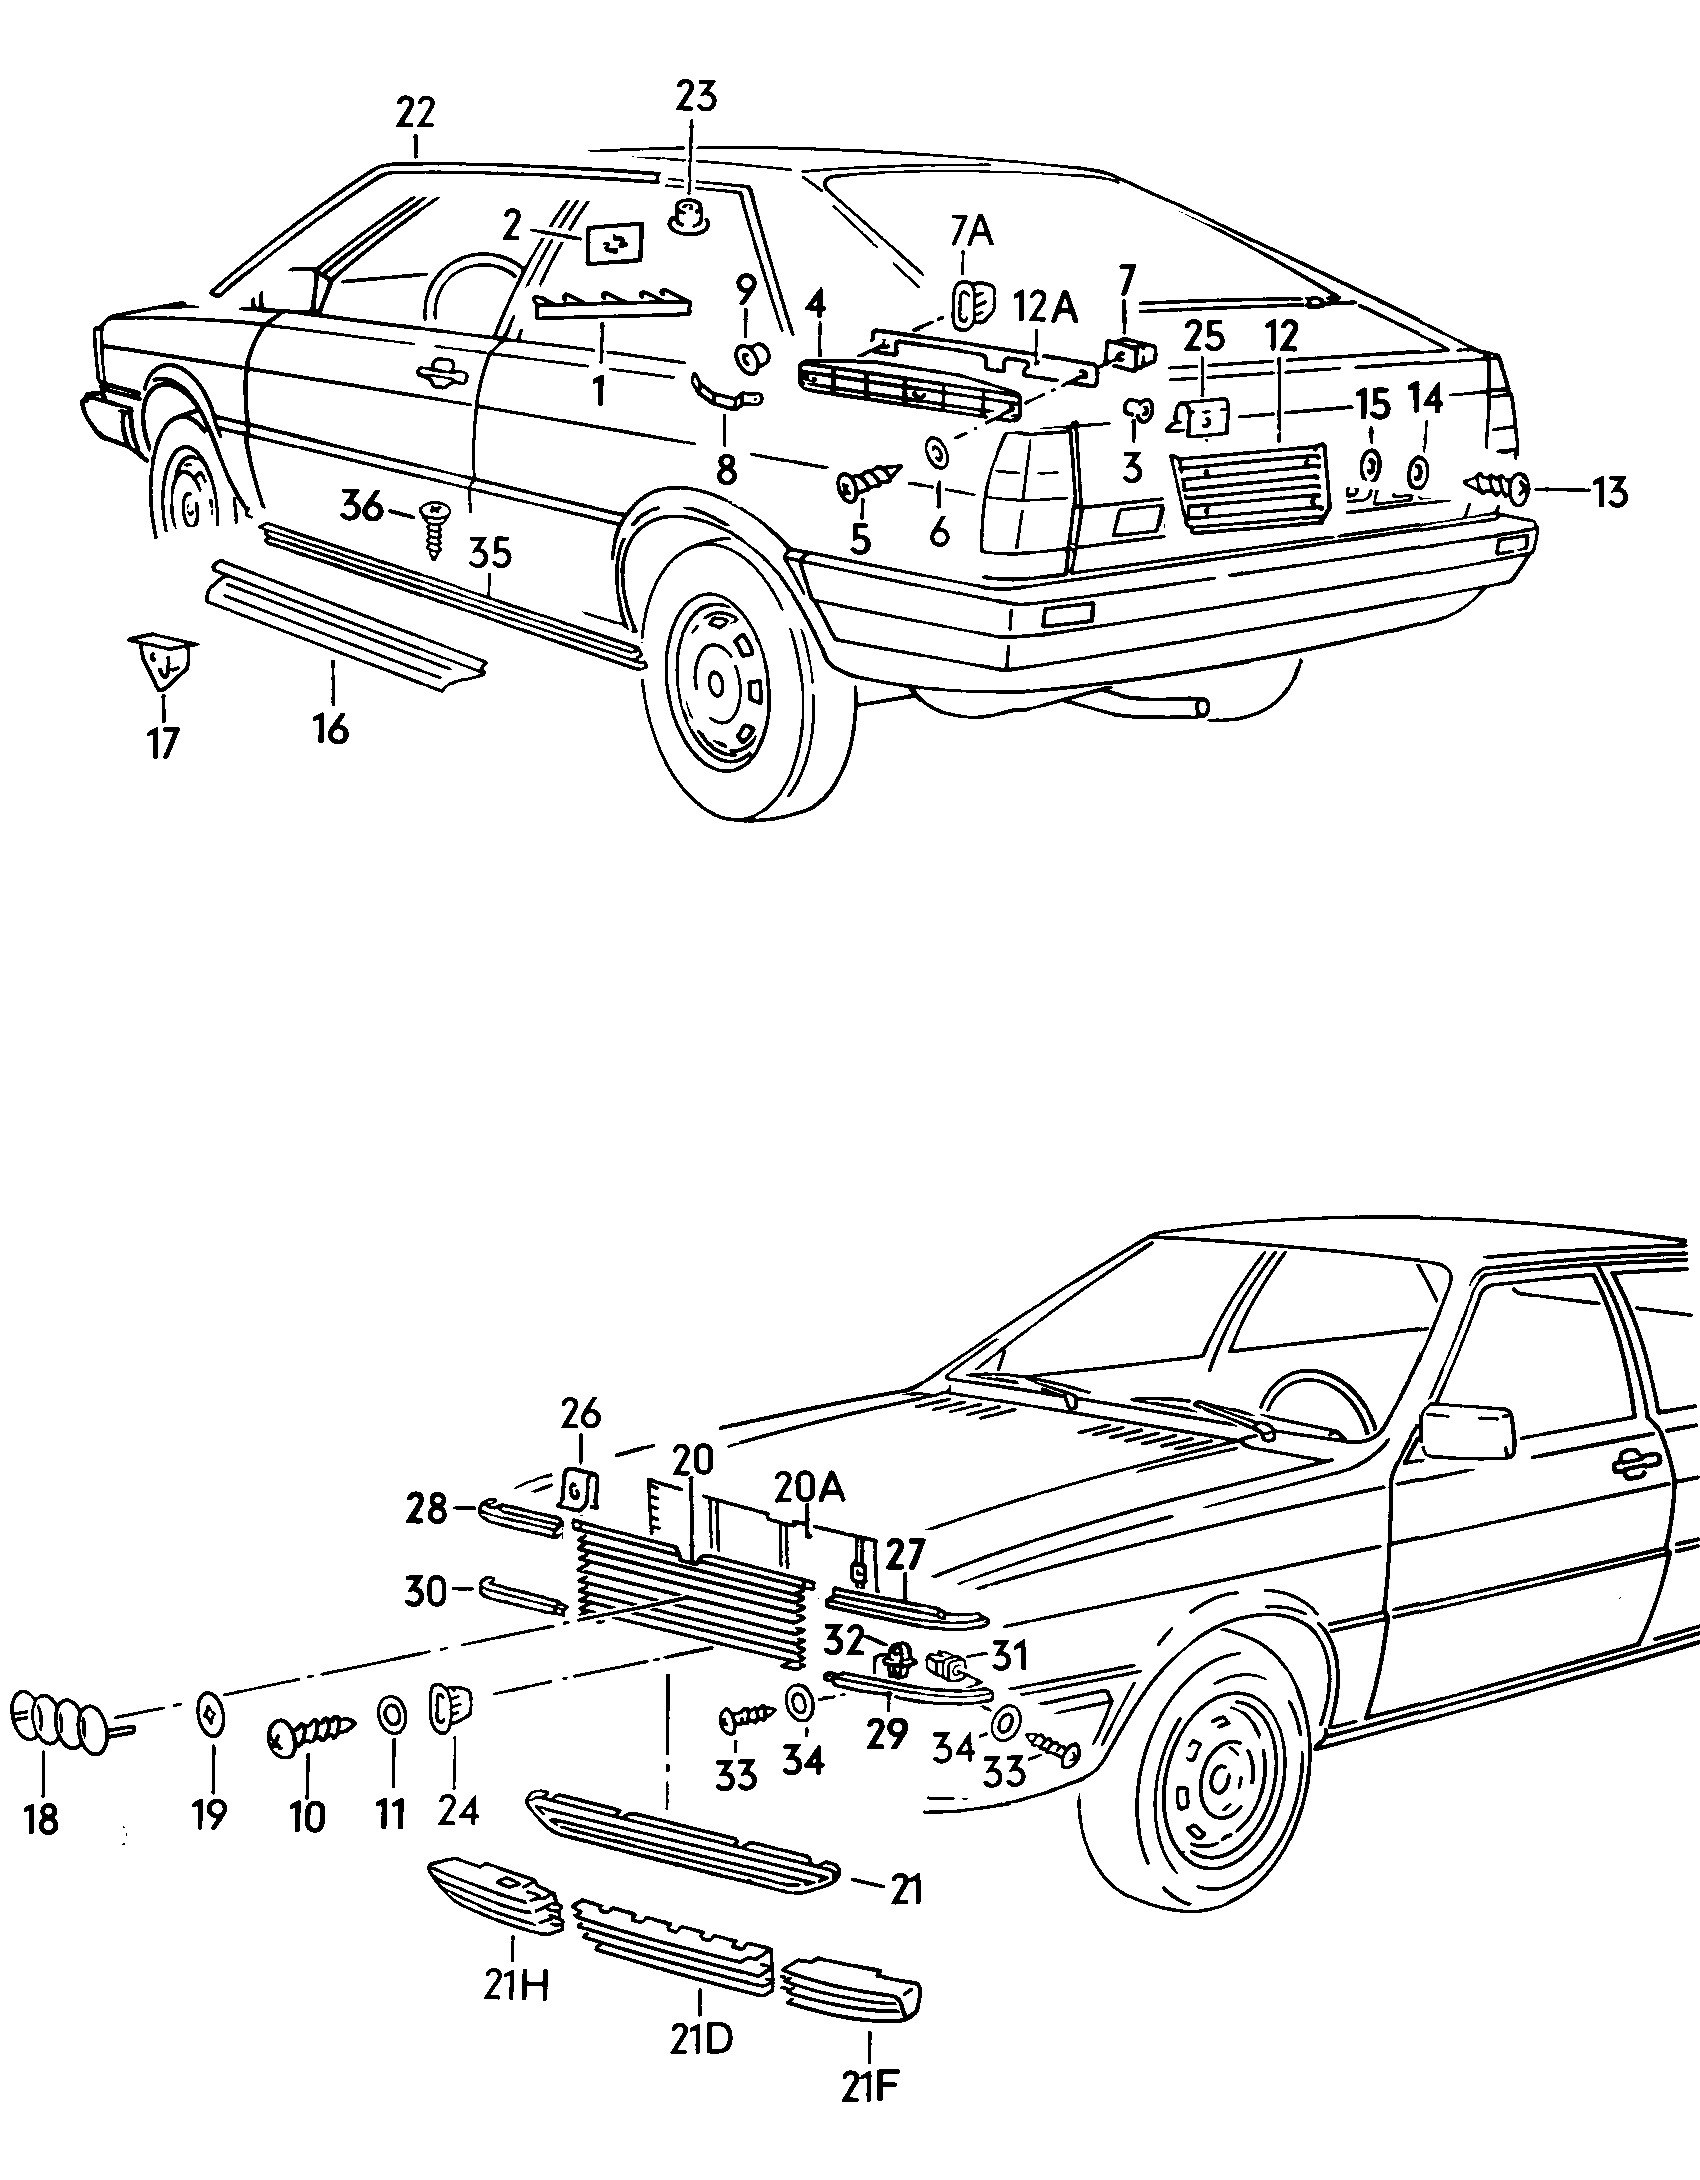 emblemen - Audi Coupe(ACO)  